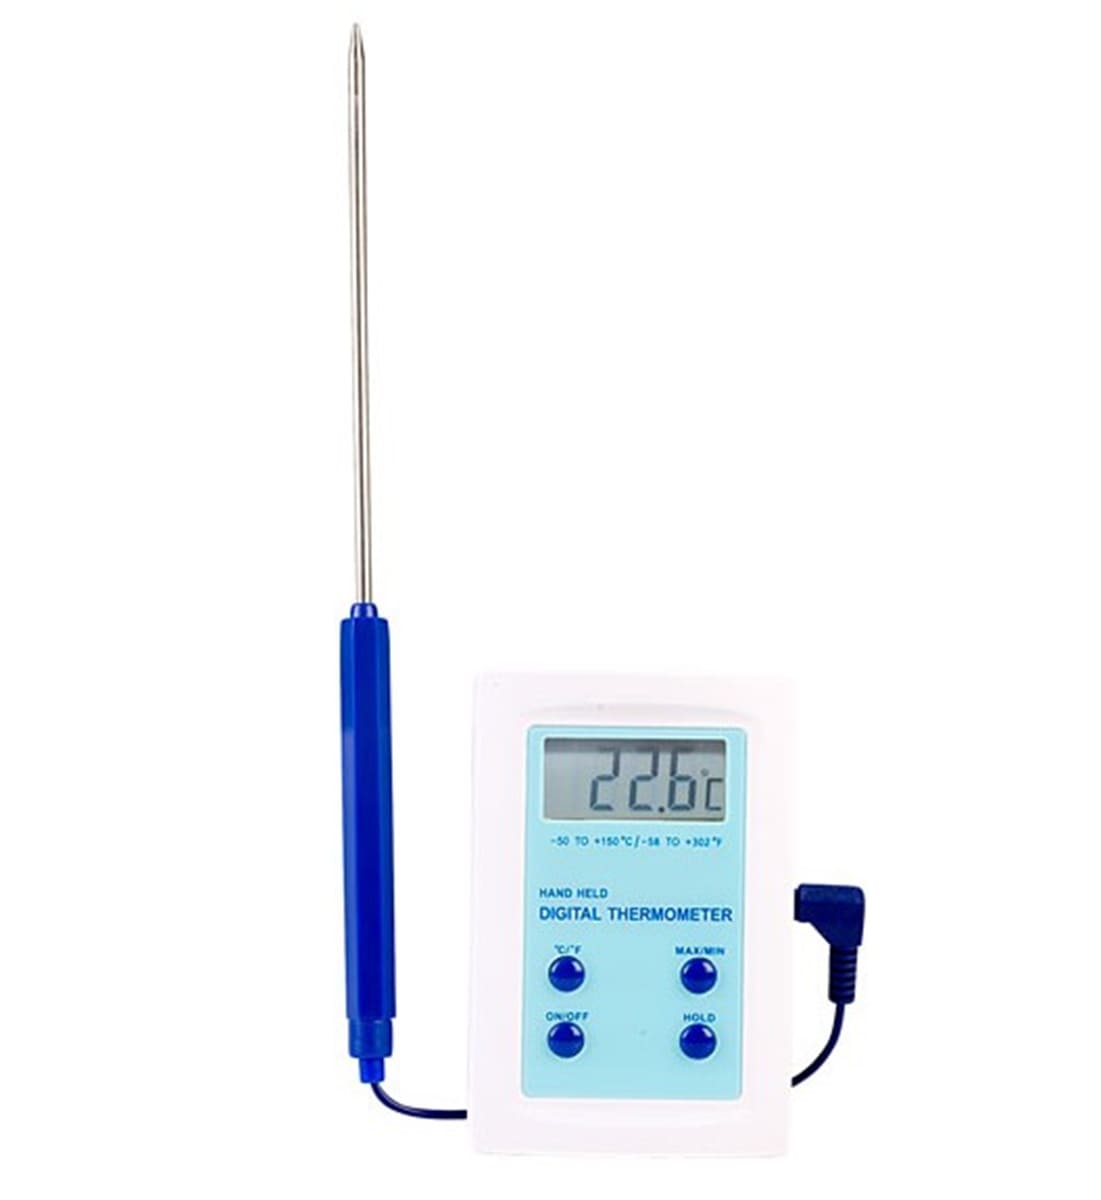 Digital Thermometer | Hand Held | ETI 810-930